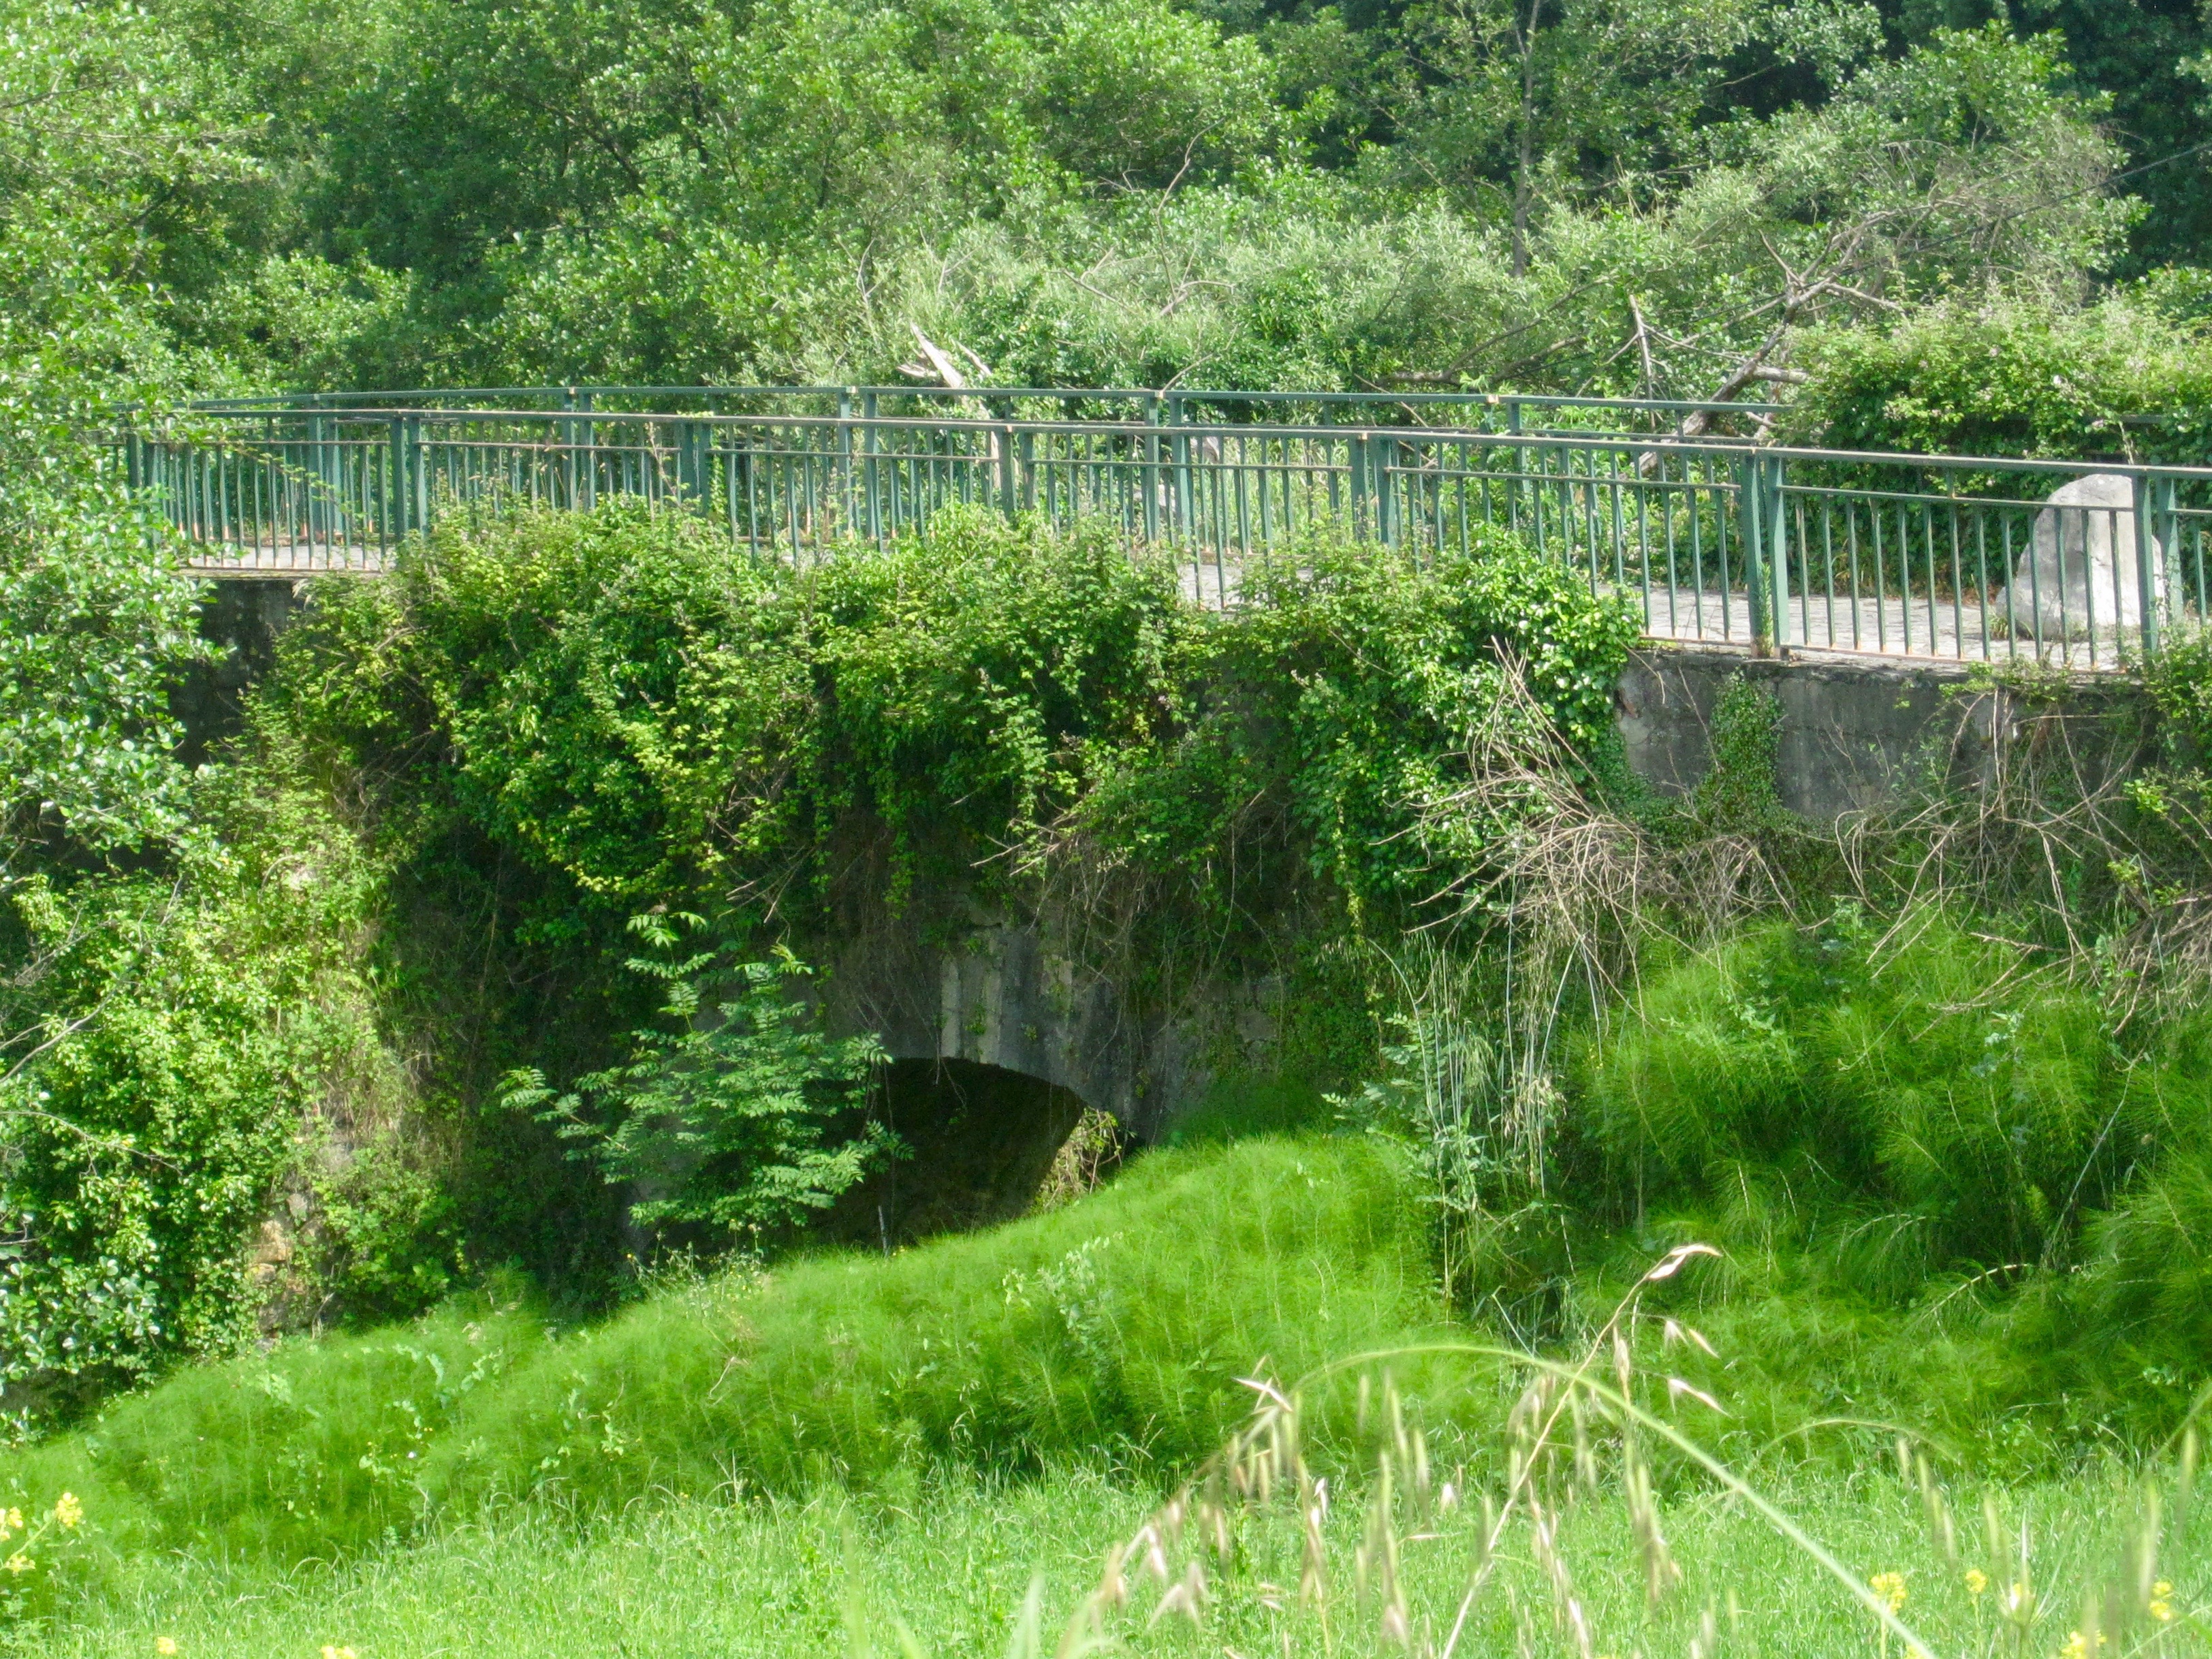 Ponte de Gallegos, 13th century